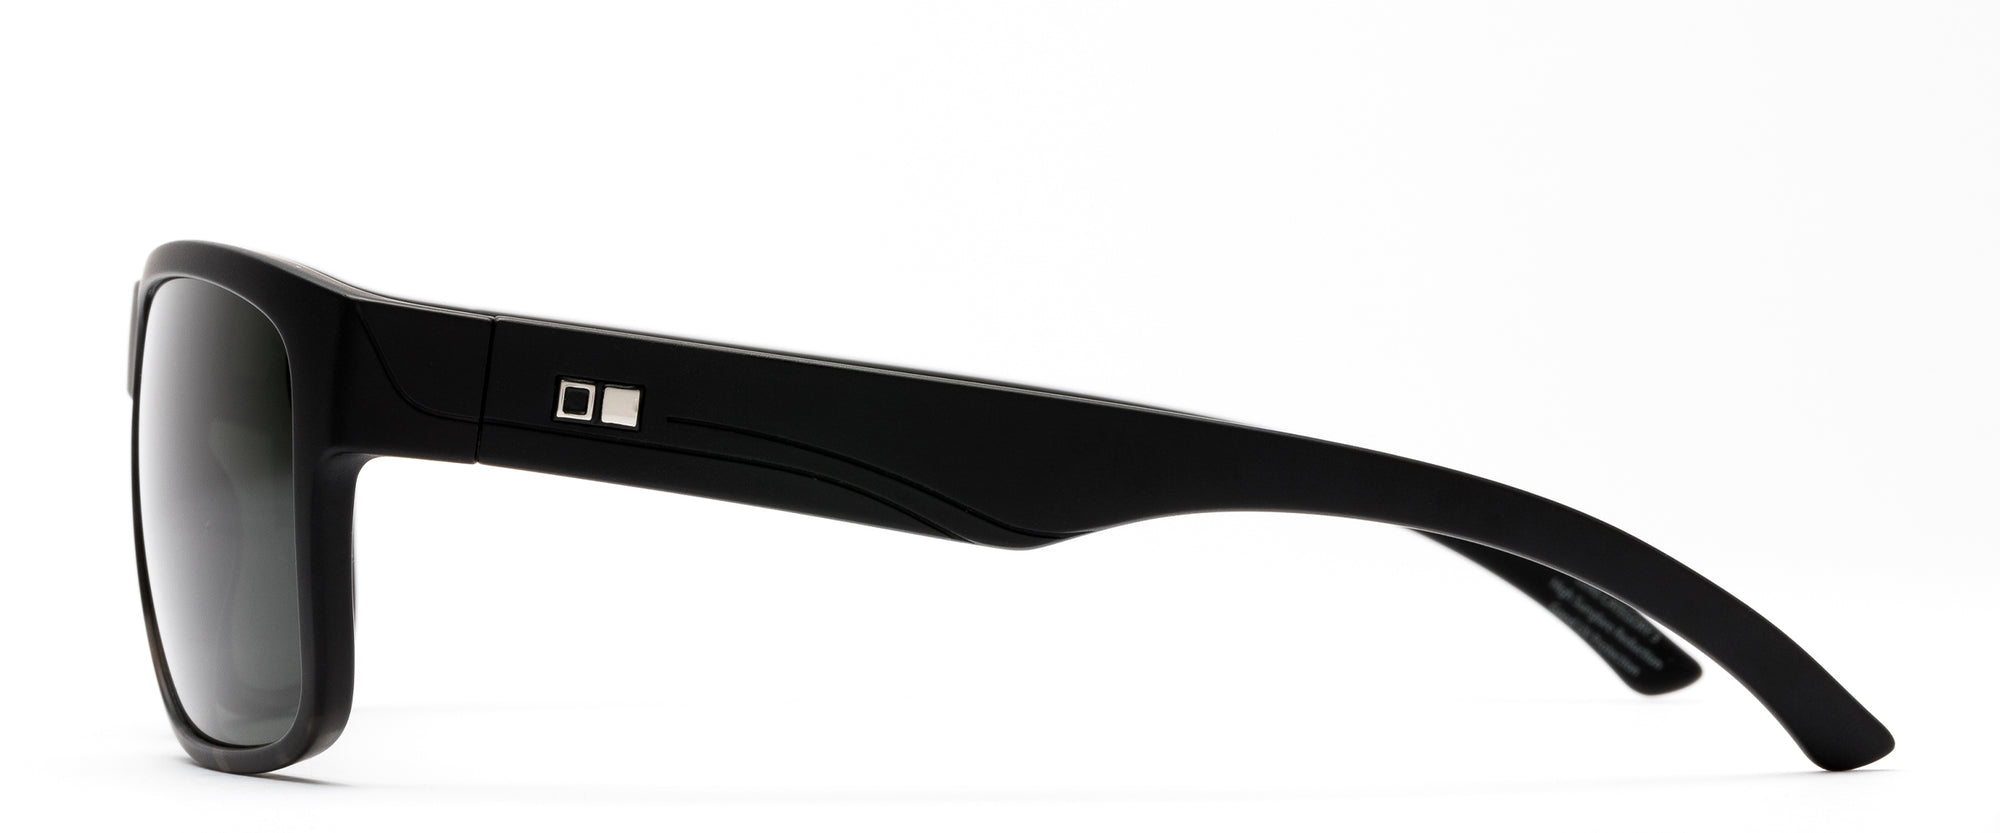 Otis Mineral Glass Eyewear RAMBLER (Matte Black Tort / Grey) Polarized